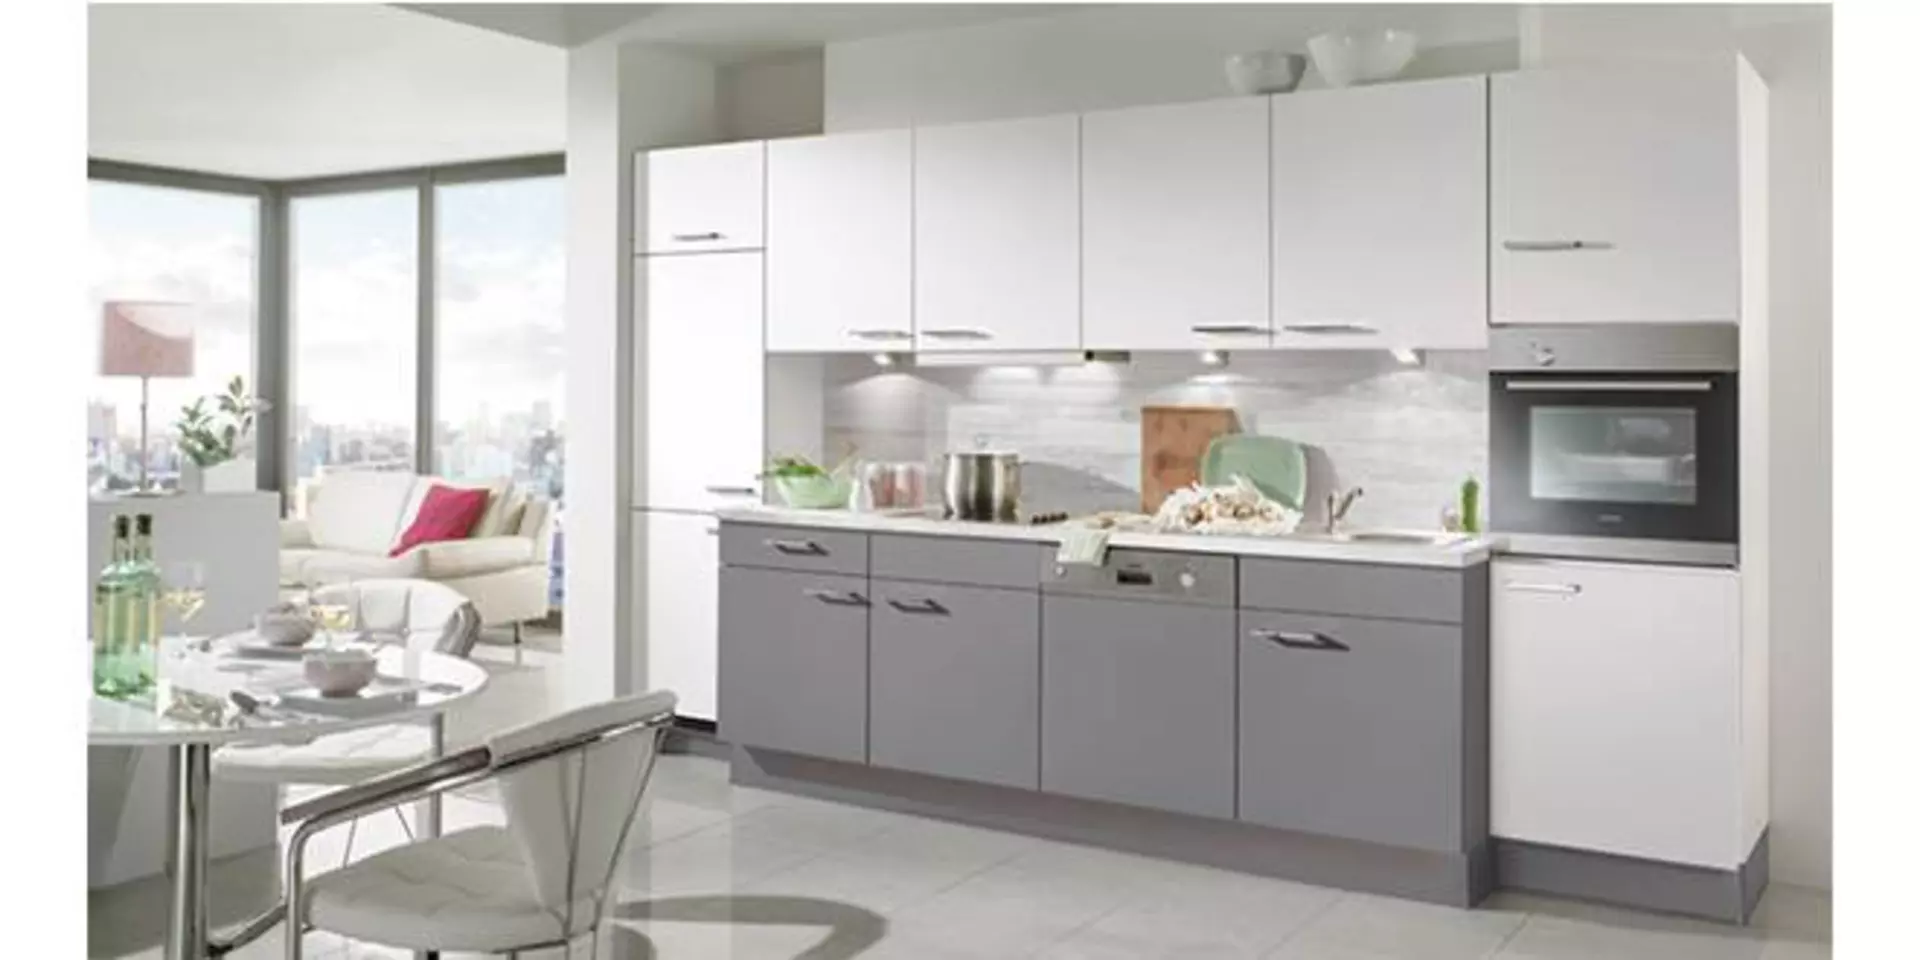 Lange Küchenzeile mit grauen Unterschränken und weißen Hängeschränken zeigt eine potentielle Planungsküche.